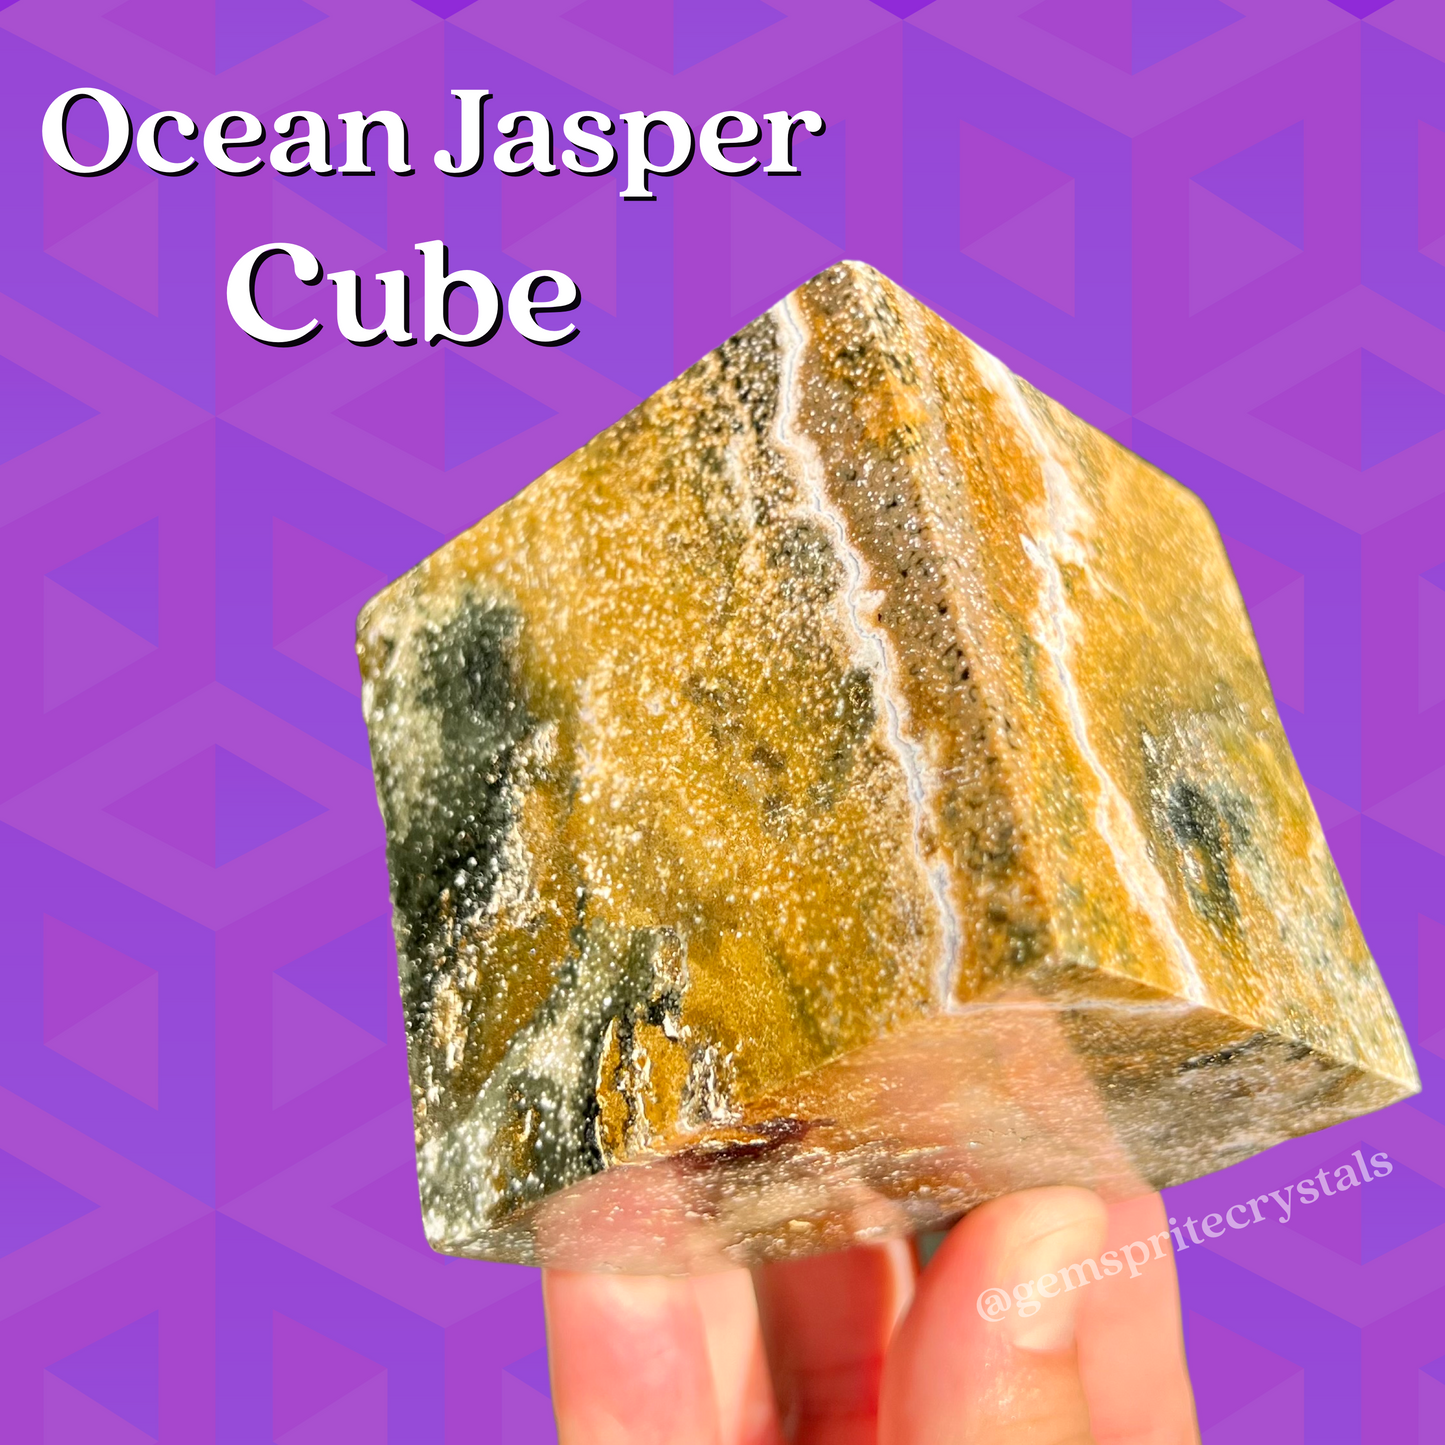 Ocean Jasper Cube